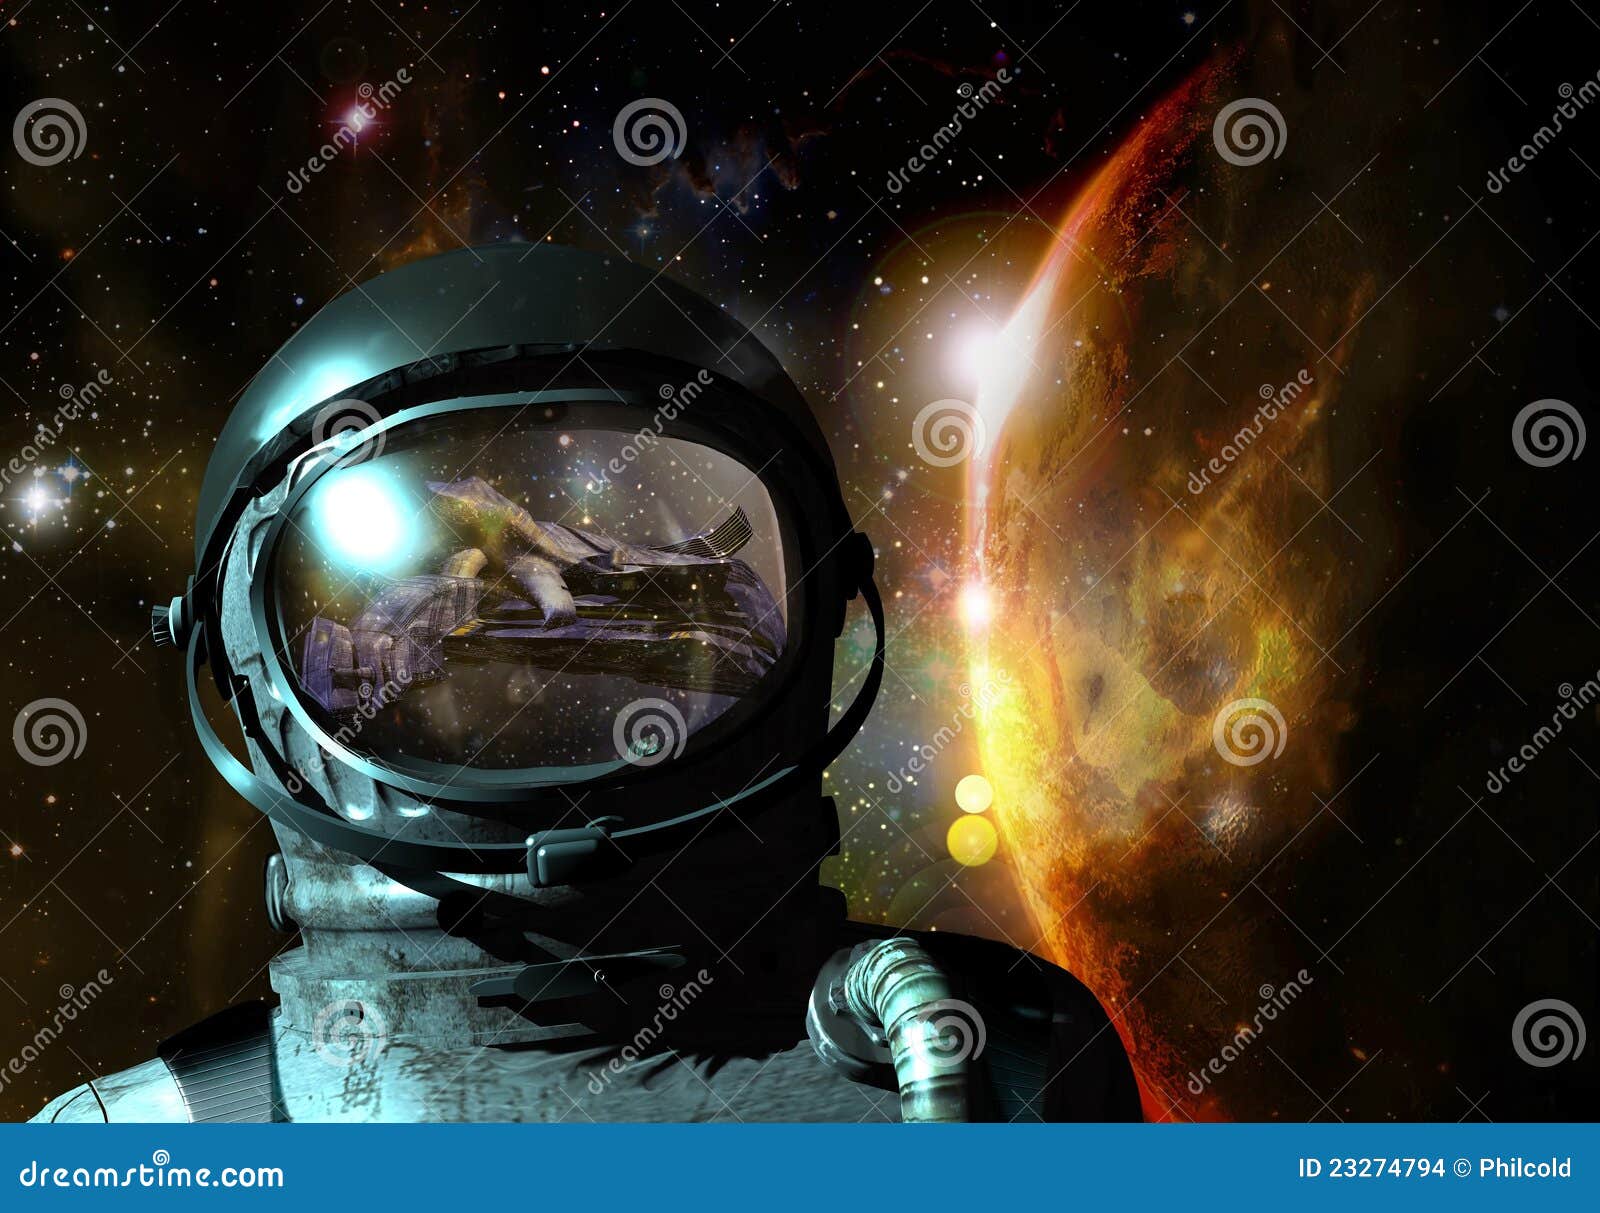 cosmonaut visions